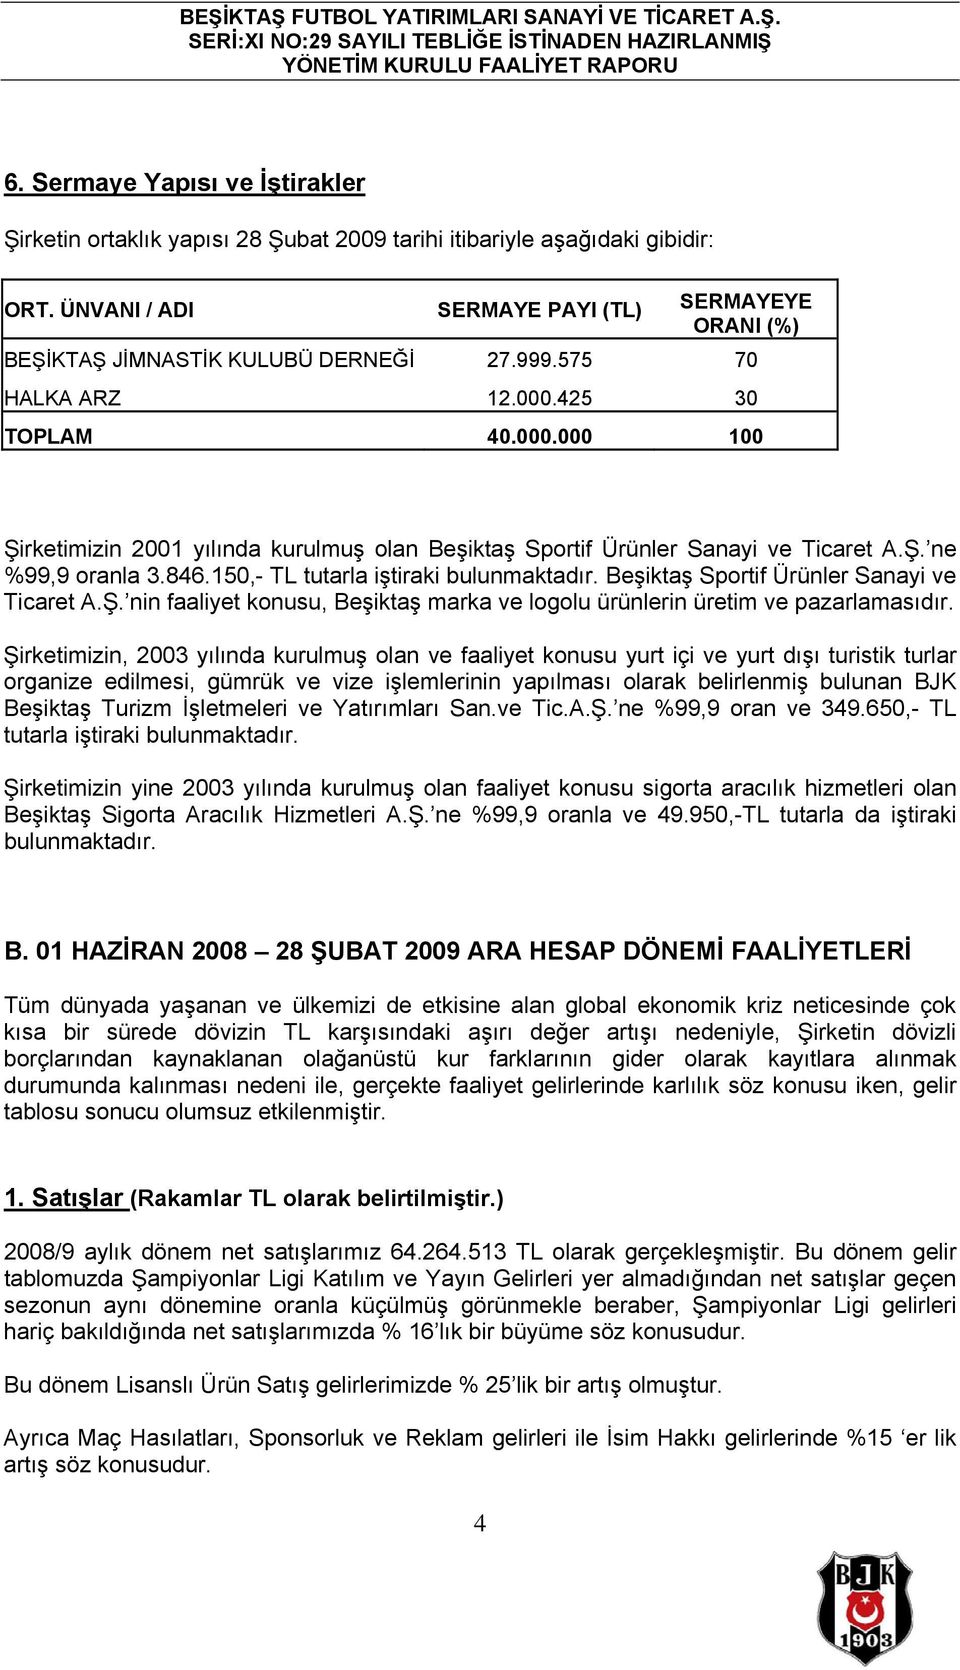 425 30 TOPLAM 40.000.000 100 Şirketimizin 2001 yılında kurulmuş olan Beşiktaş Sportif Ürünler Sanayi ve Ticaret A.Ş. ne %99,9 oranla 3.846.150,- TL tutarla iştiraki bulunmaktadır.